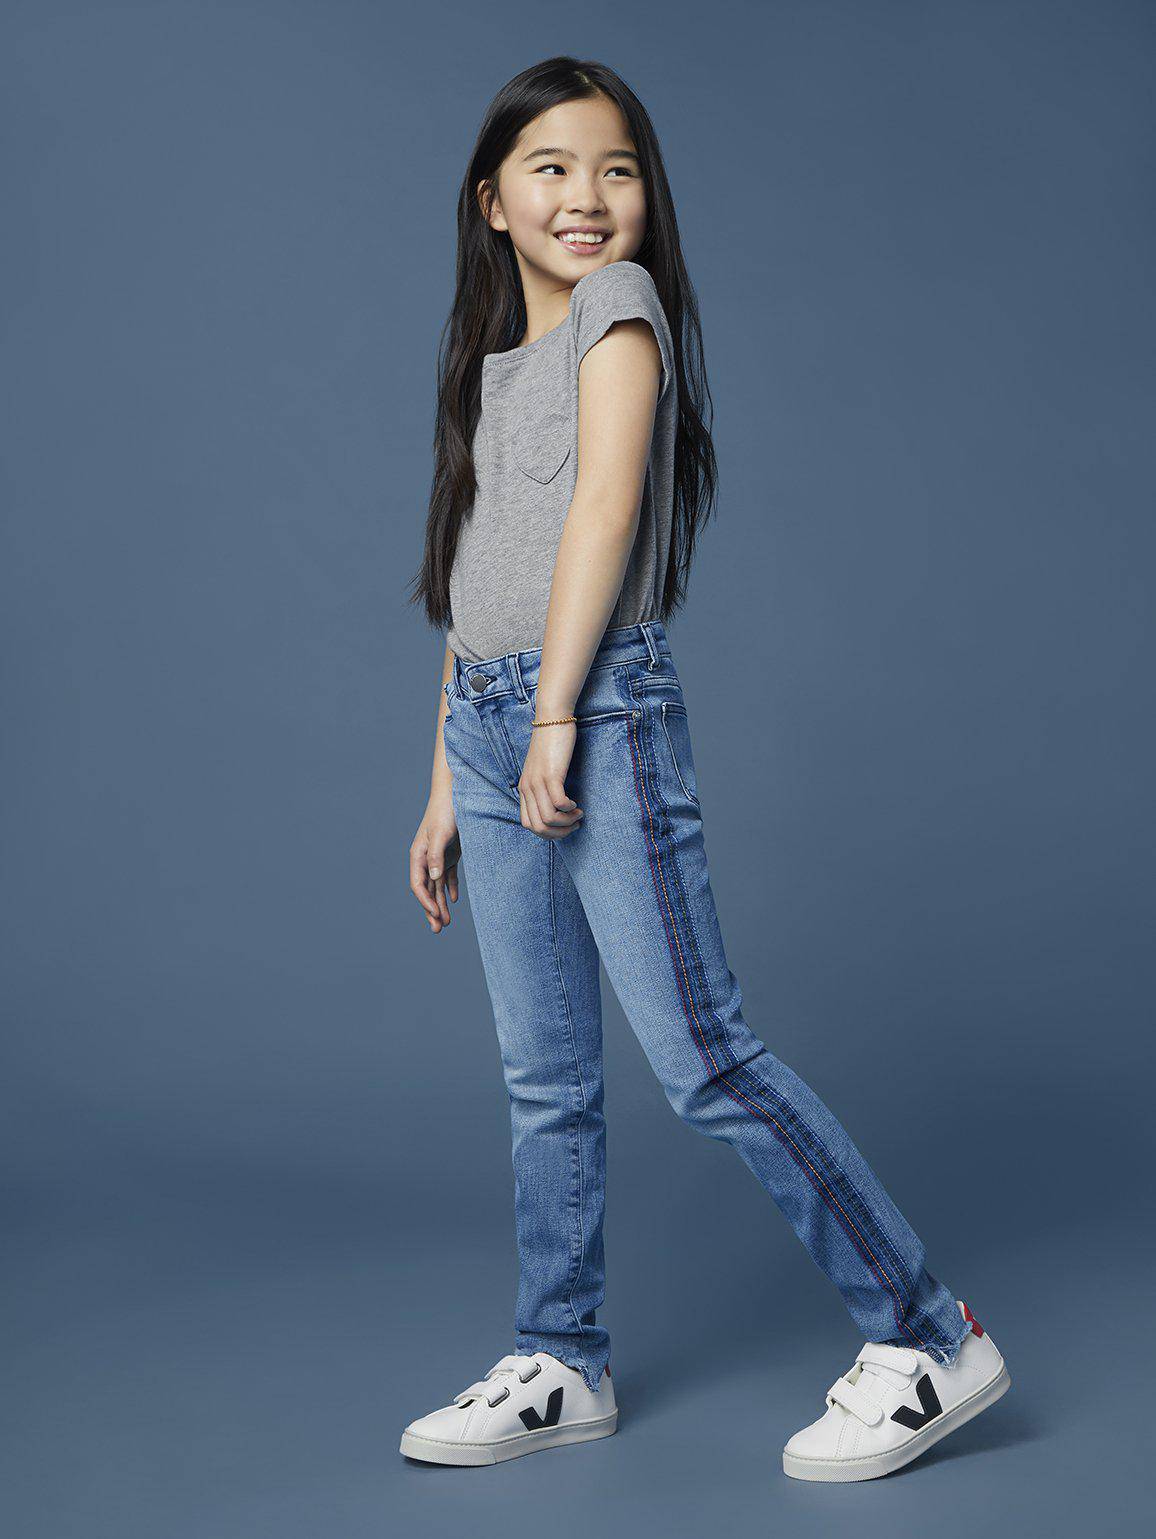 Chloe Skinny Jean in Thunder Stripe - Twinkle Twinkle Little One